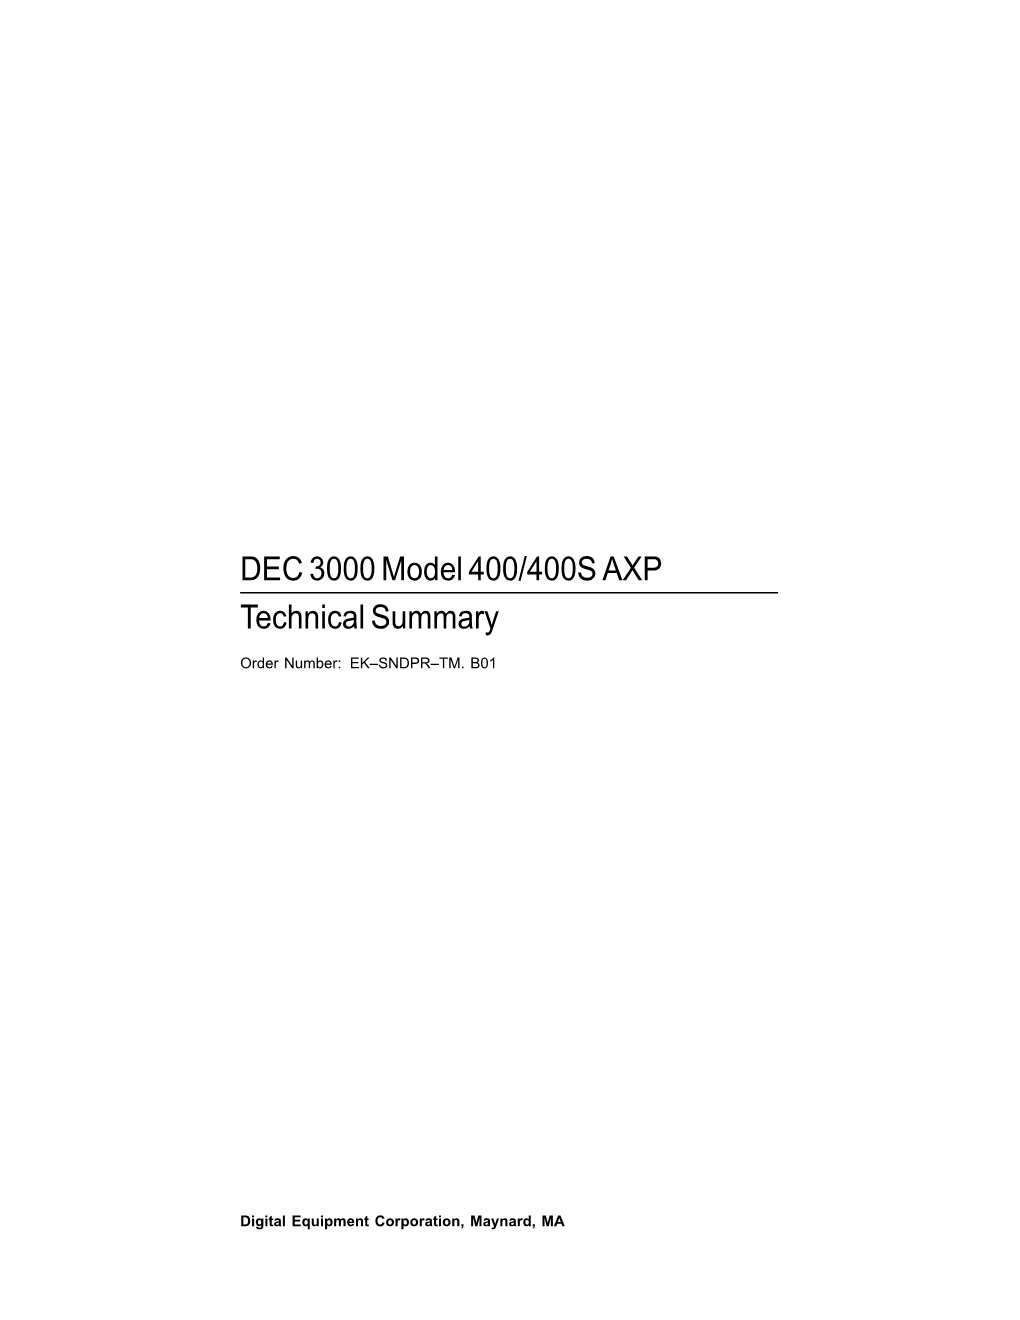 DEC 3000 Model 400/400S AXP Technical Summary